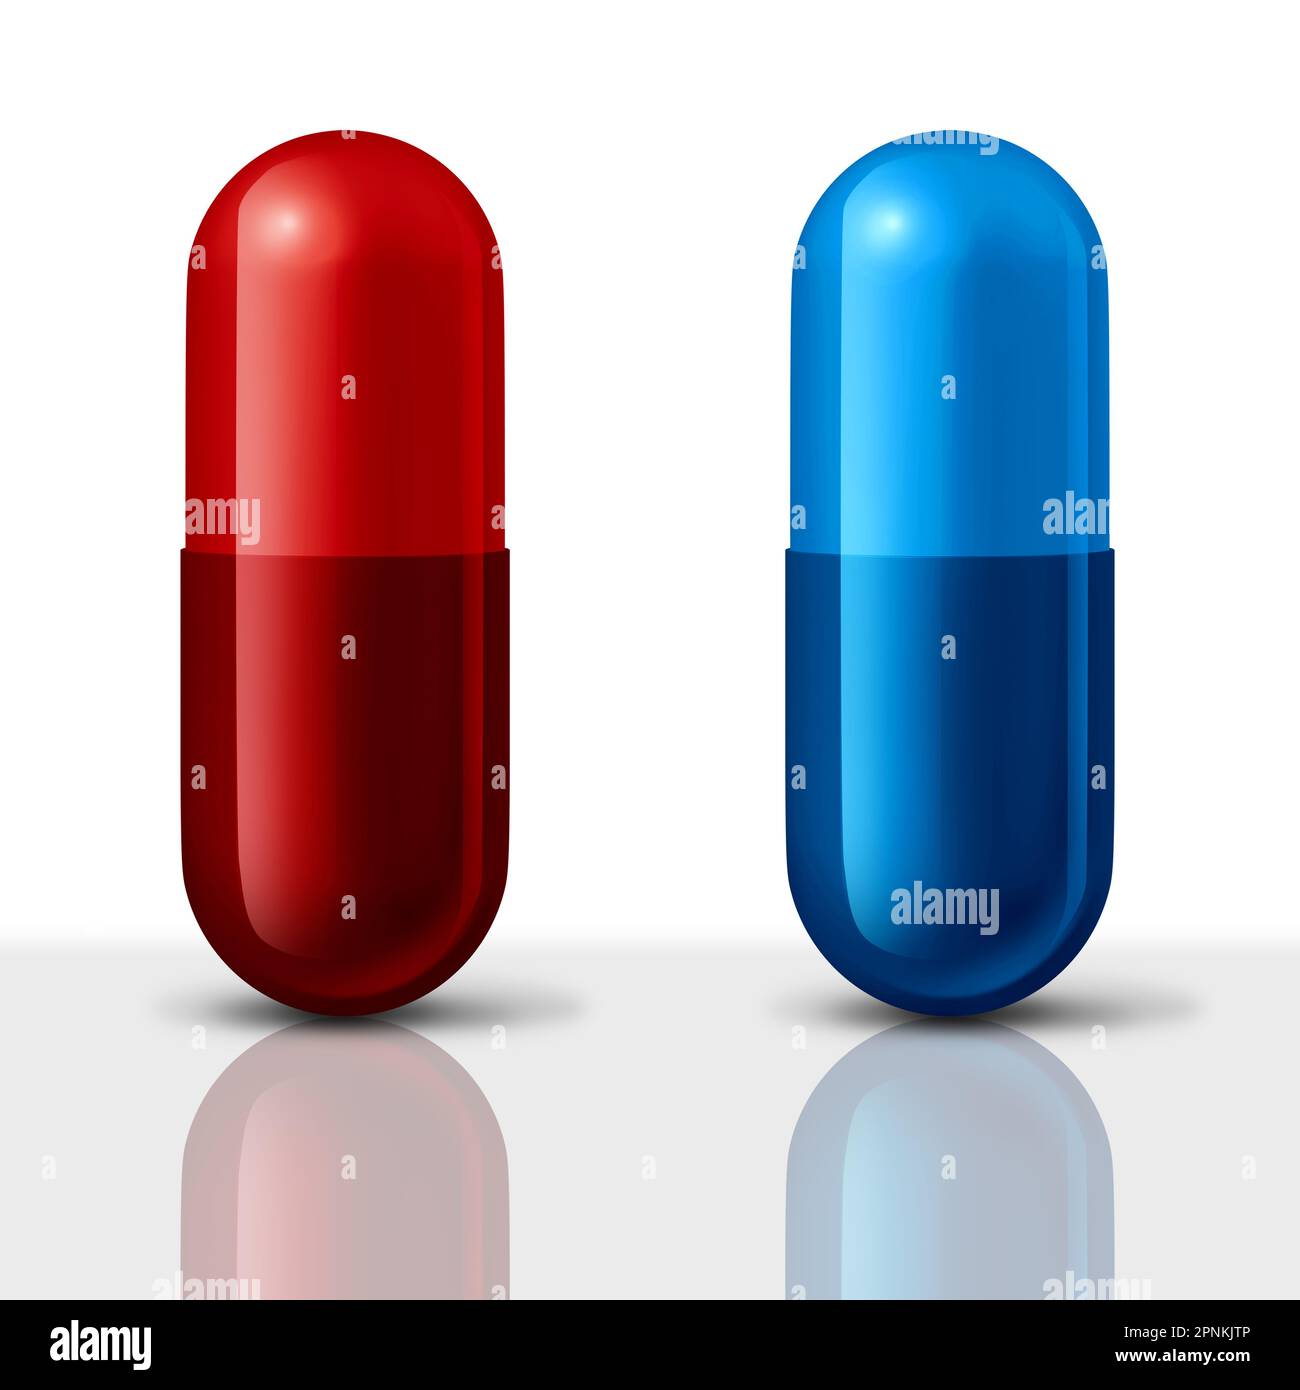 Farmaco generico e farmaco di marca come una pillola rossa e blu scelta capsule di farmaco come simbolo di scelta tra farmaci generici a basso prezzo Foto Stock